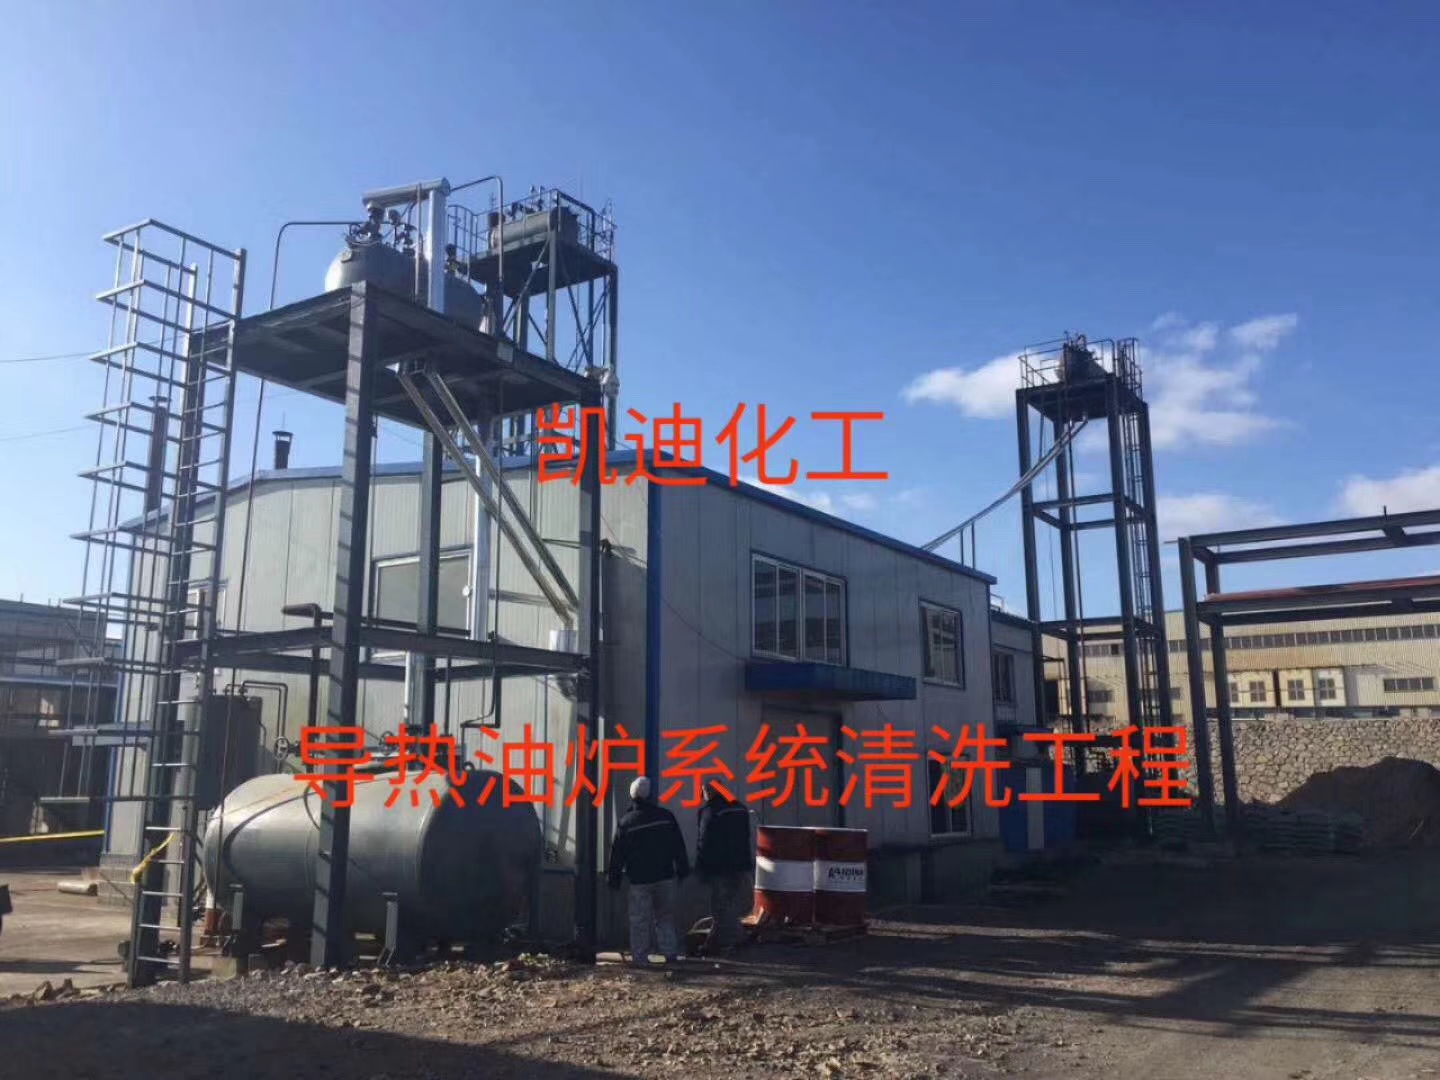 辽宁大连新材料公司导热油炉系统整体清洗工程结束